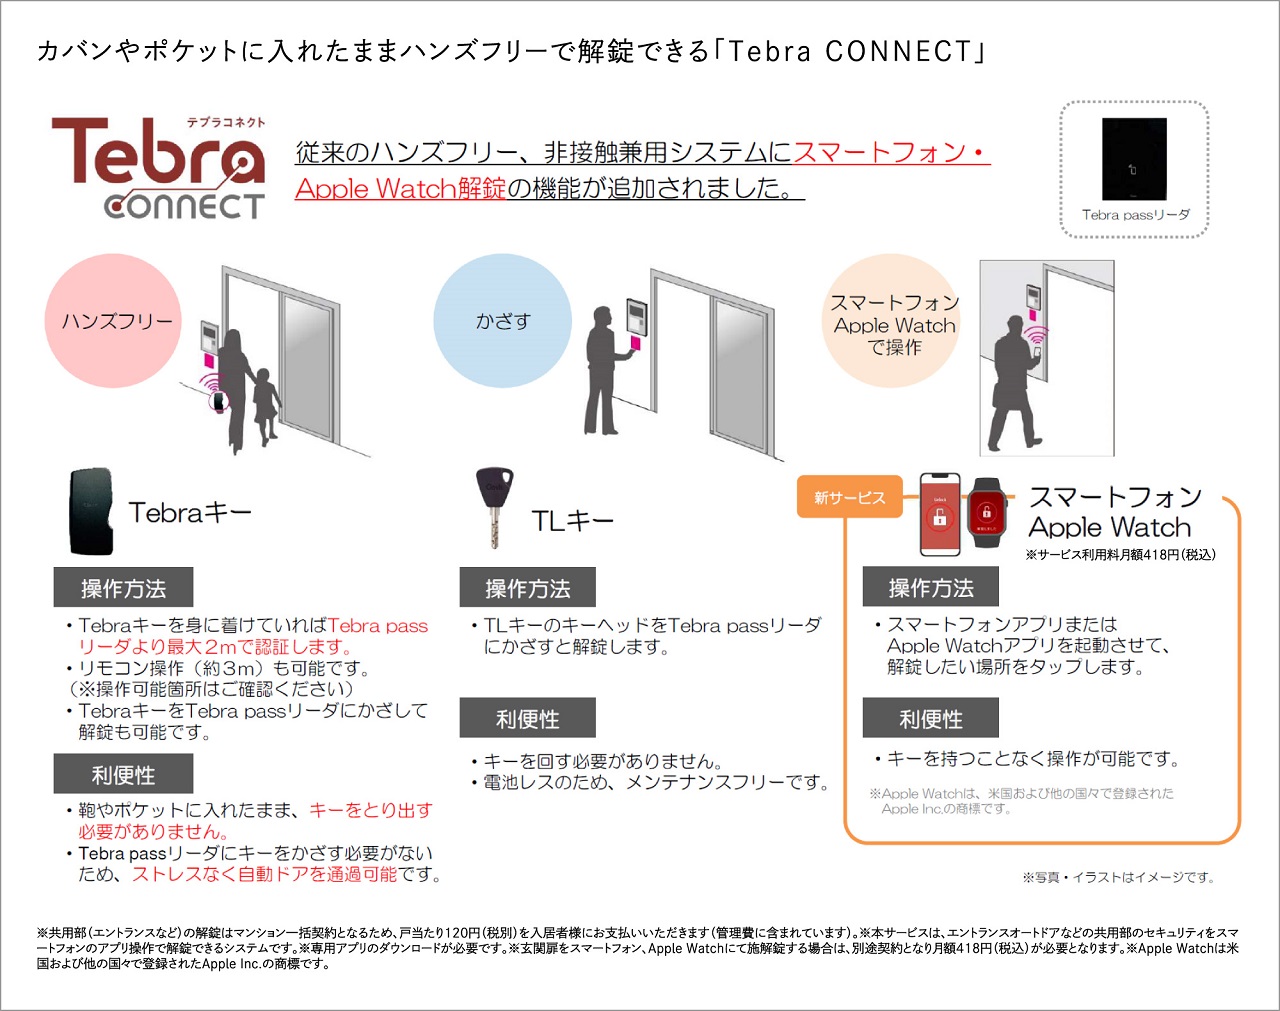 カバンやポケットに入れたままハンズフリーで解錠できる「Tebra CONNECT」